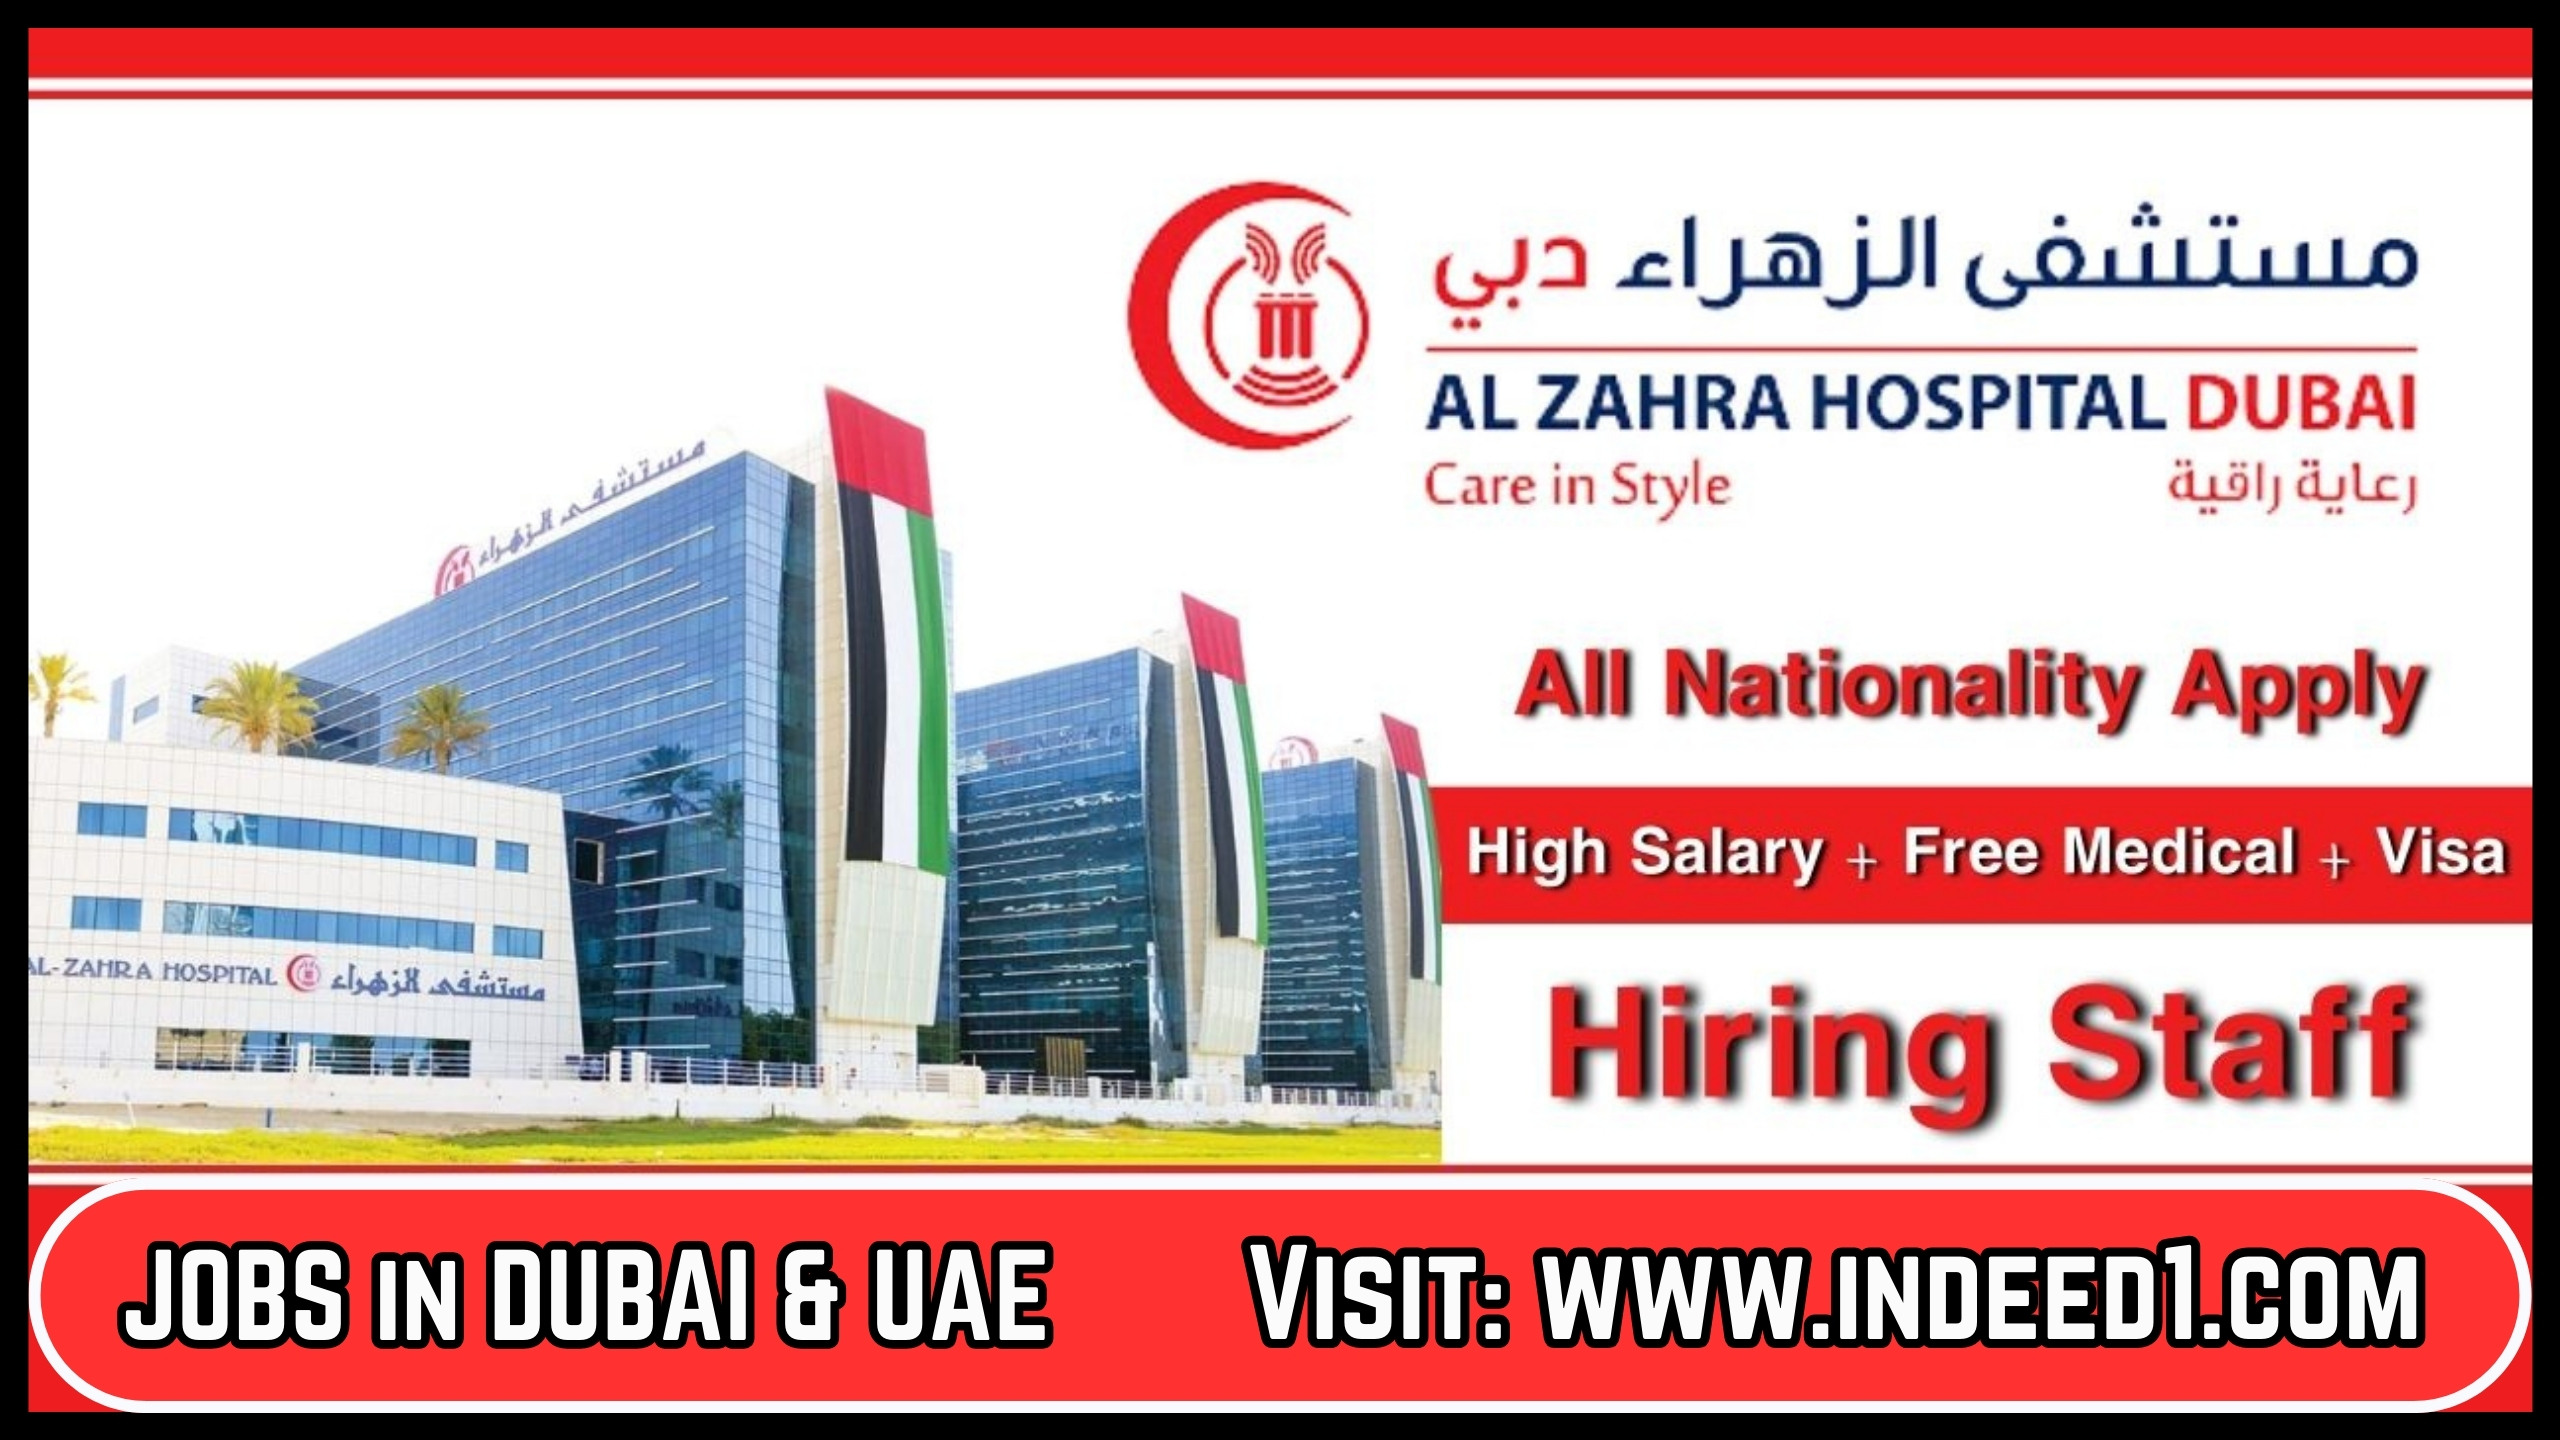 Al ZAHRA Hospital Careers